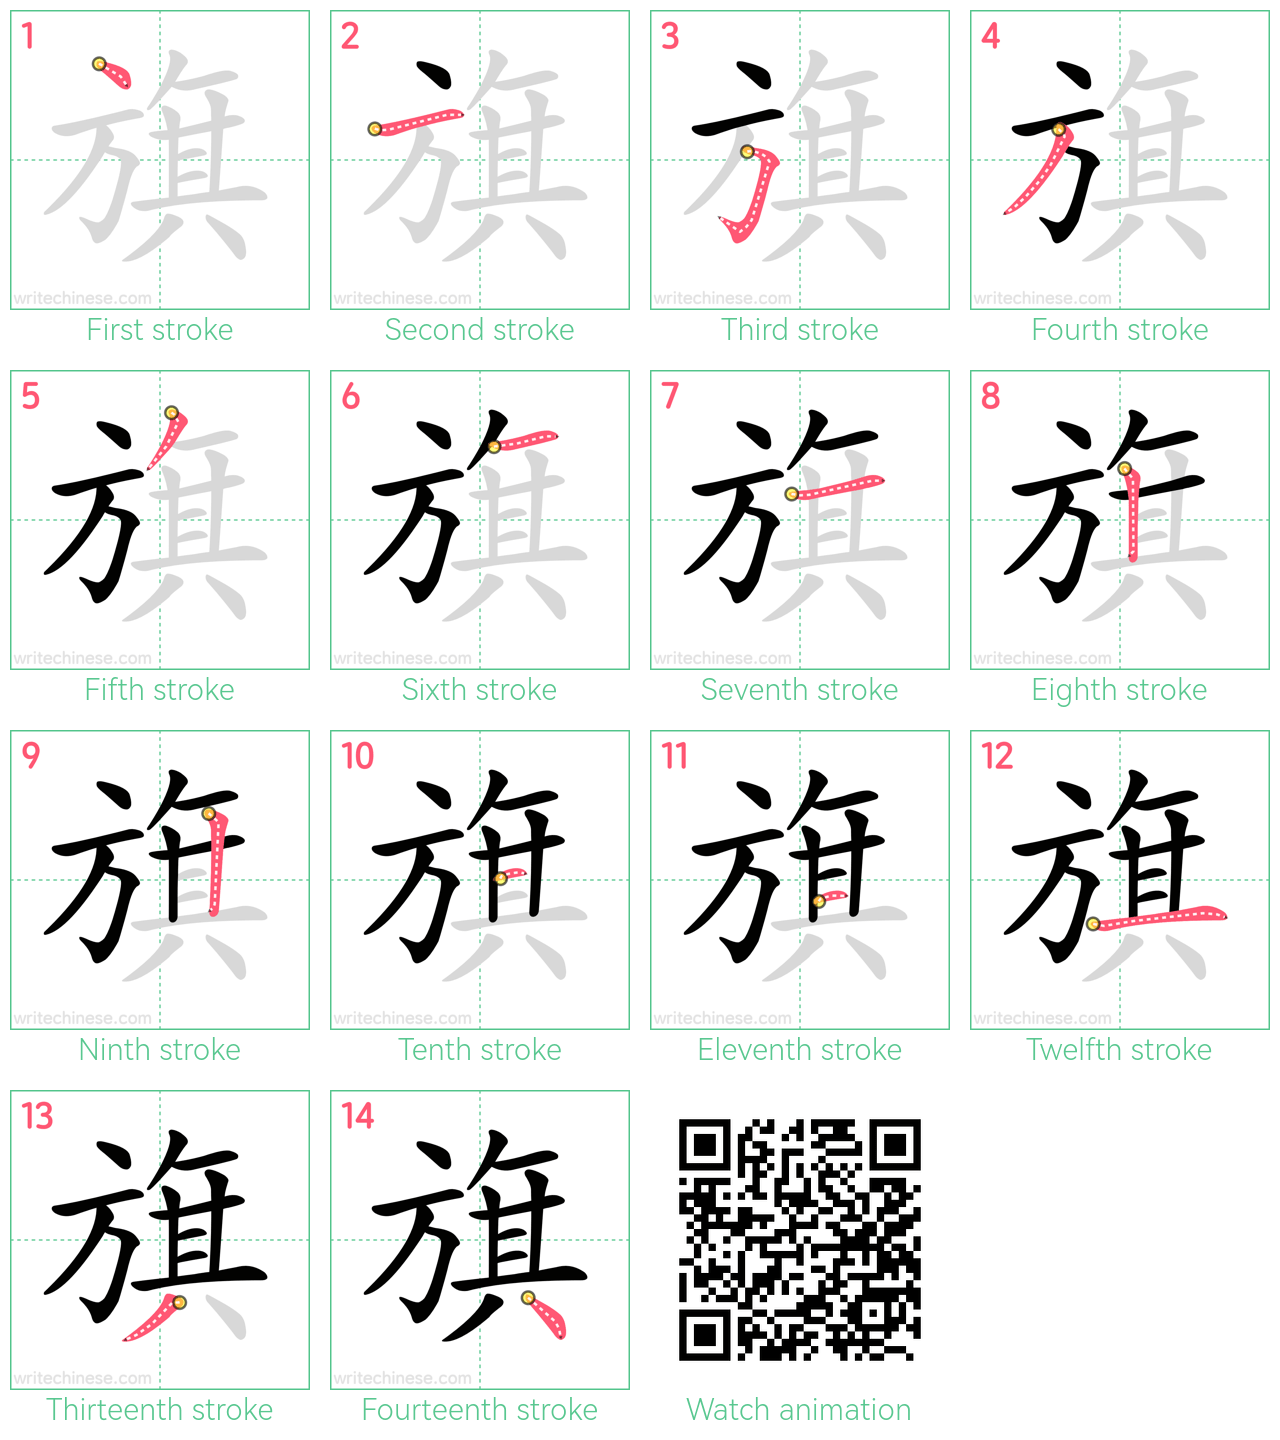 旗 step-by-step stroke order diagrams